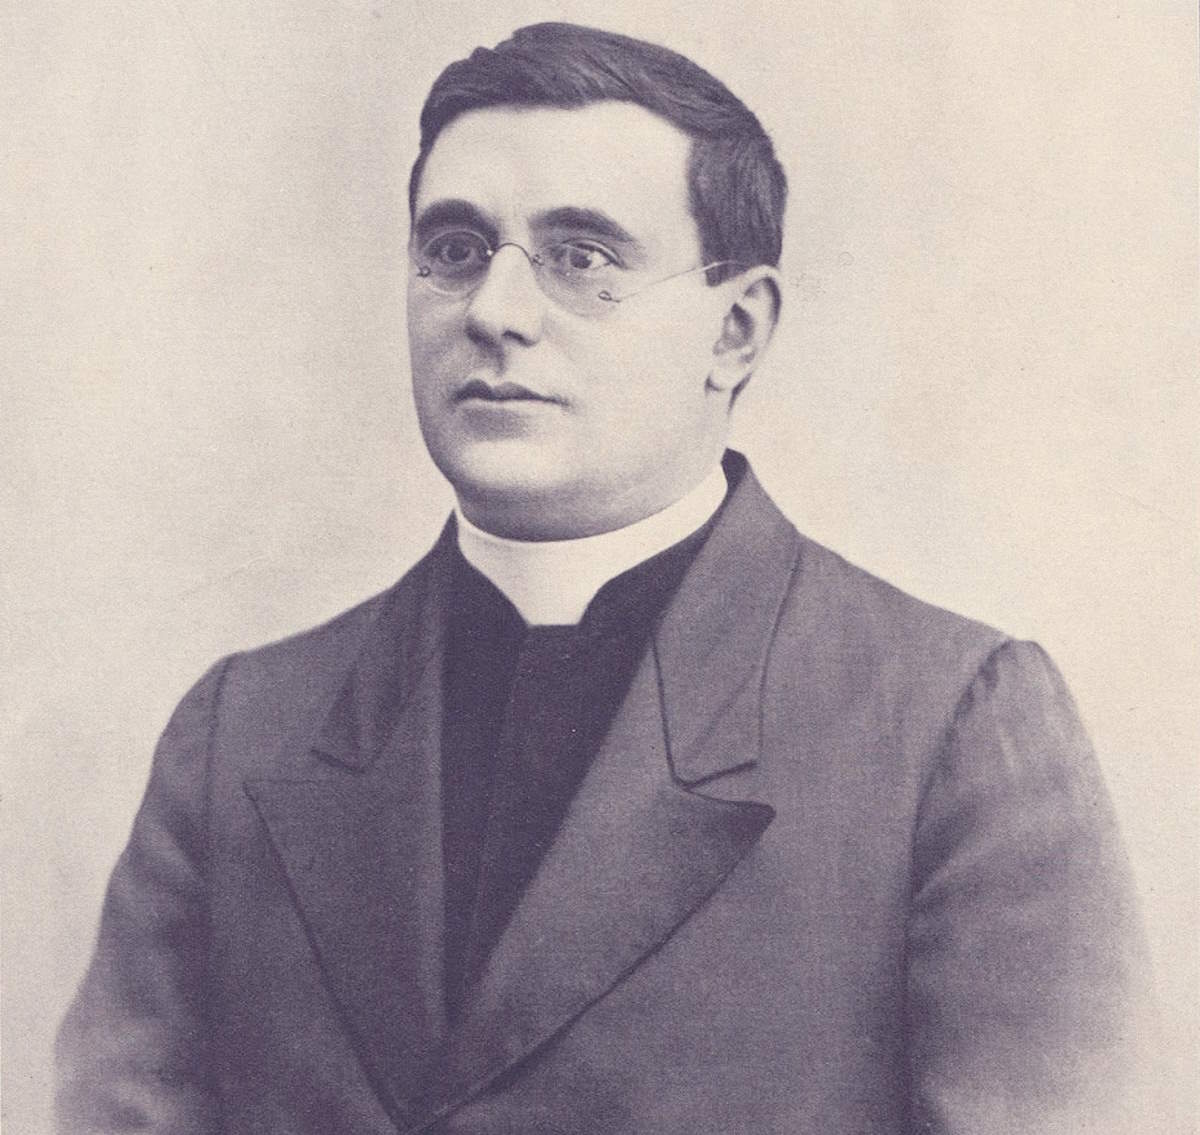 100 anni fa gli squadristi di Balbo assassinavano Giovanni Minzoni, prete e antifascista